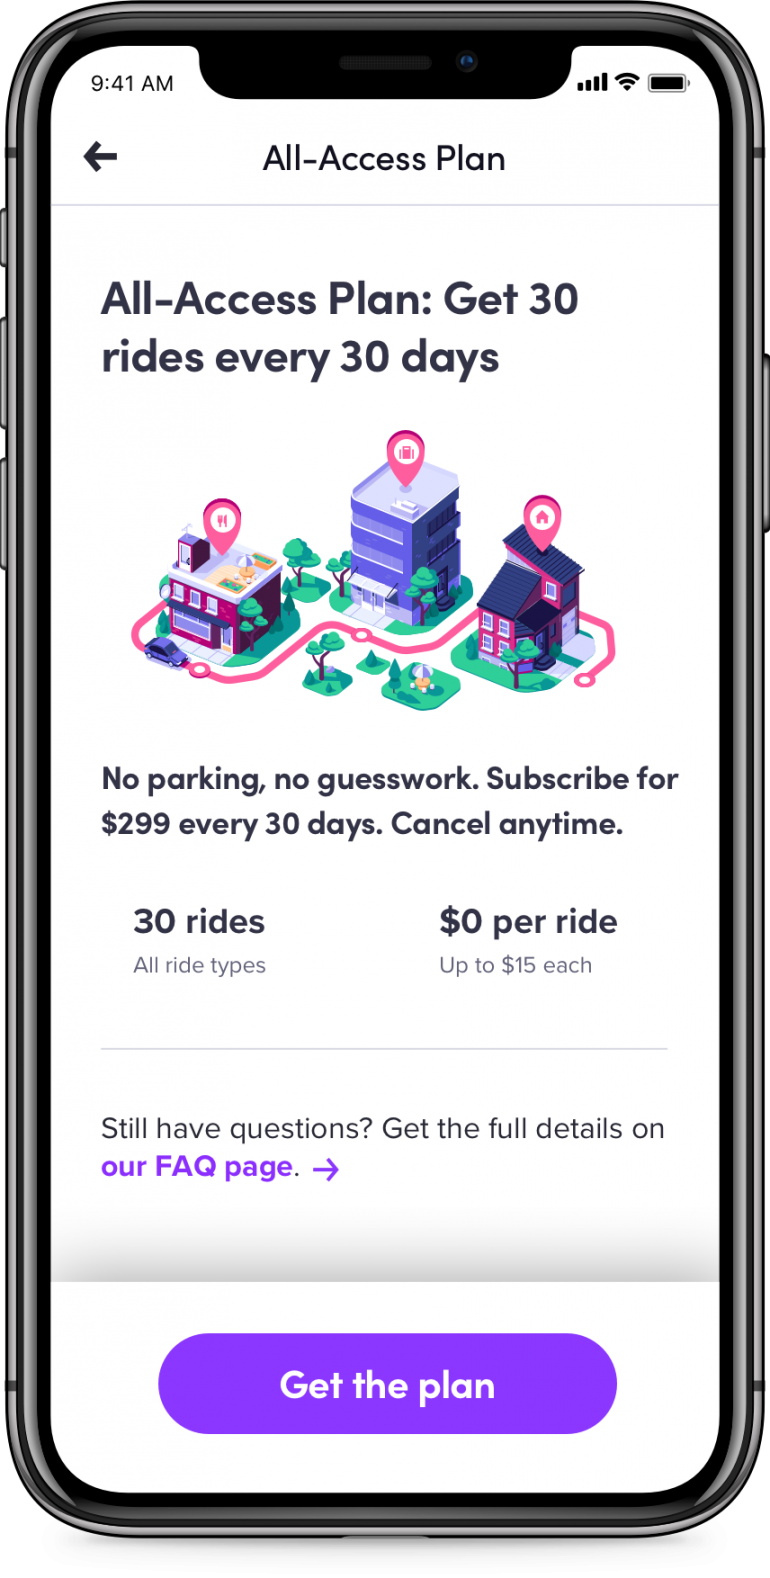 Сервис заказа такси Lyft запустил в США ежемесячную подписку All-Access Plan, за $299 клиент получает 30 поездок стоимостью до $15